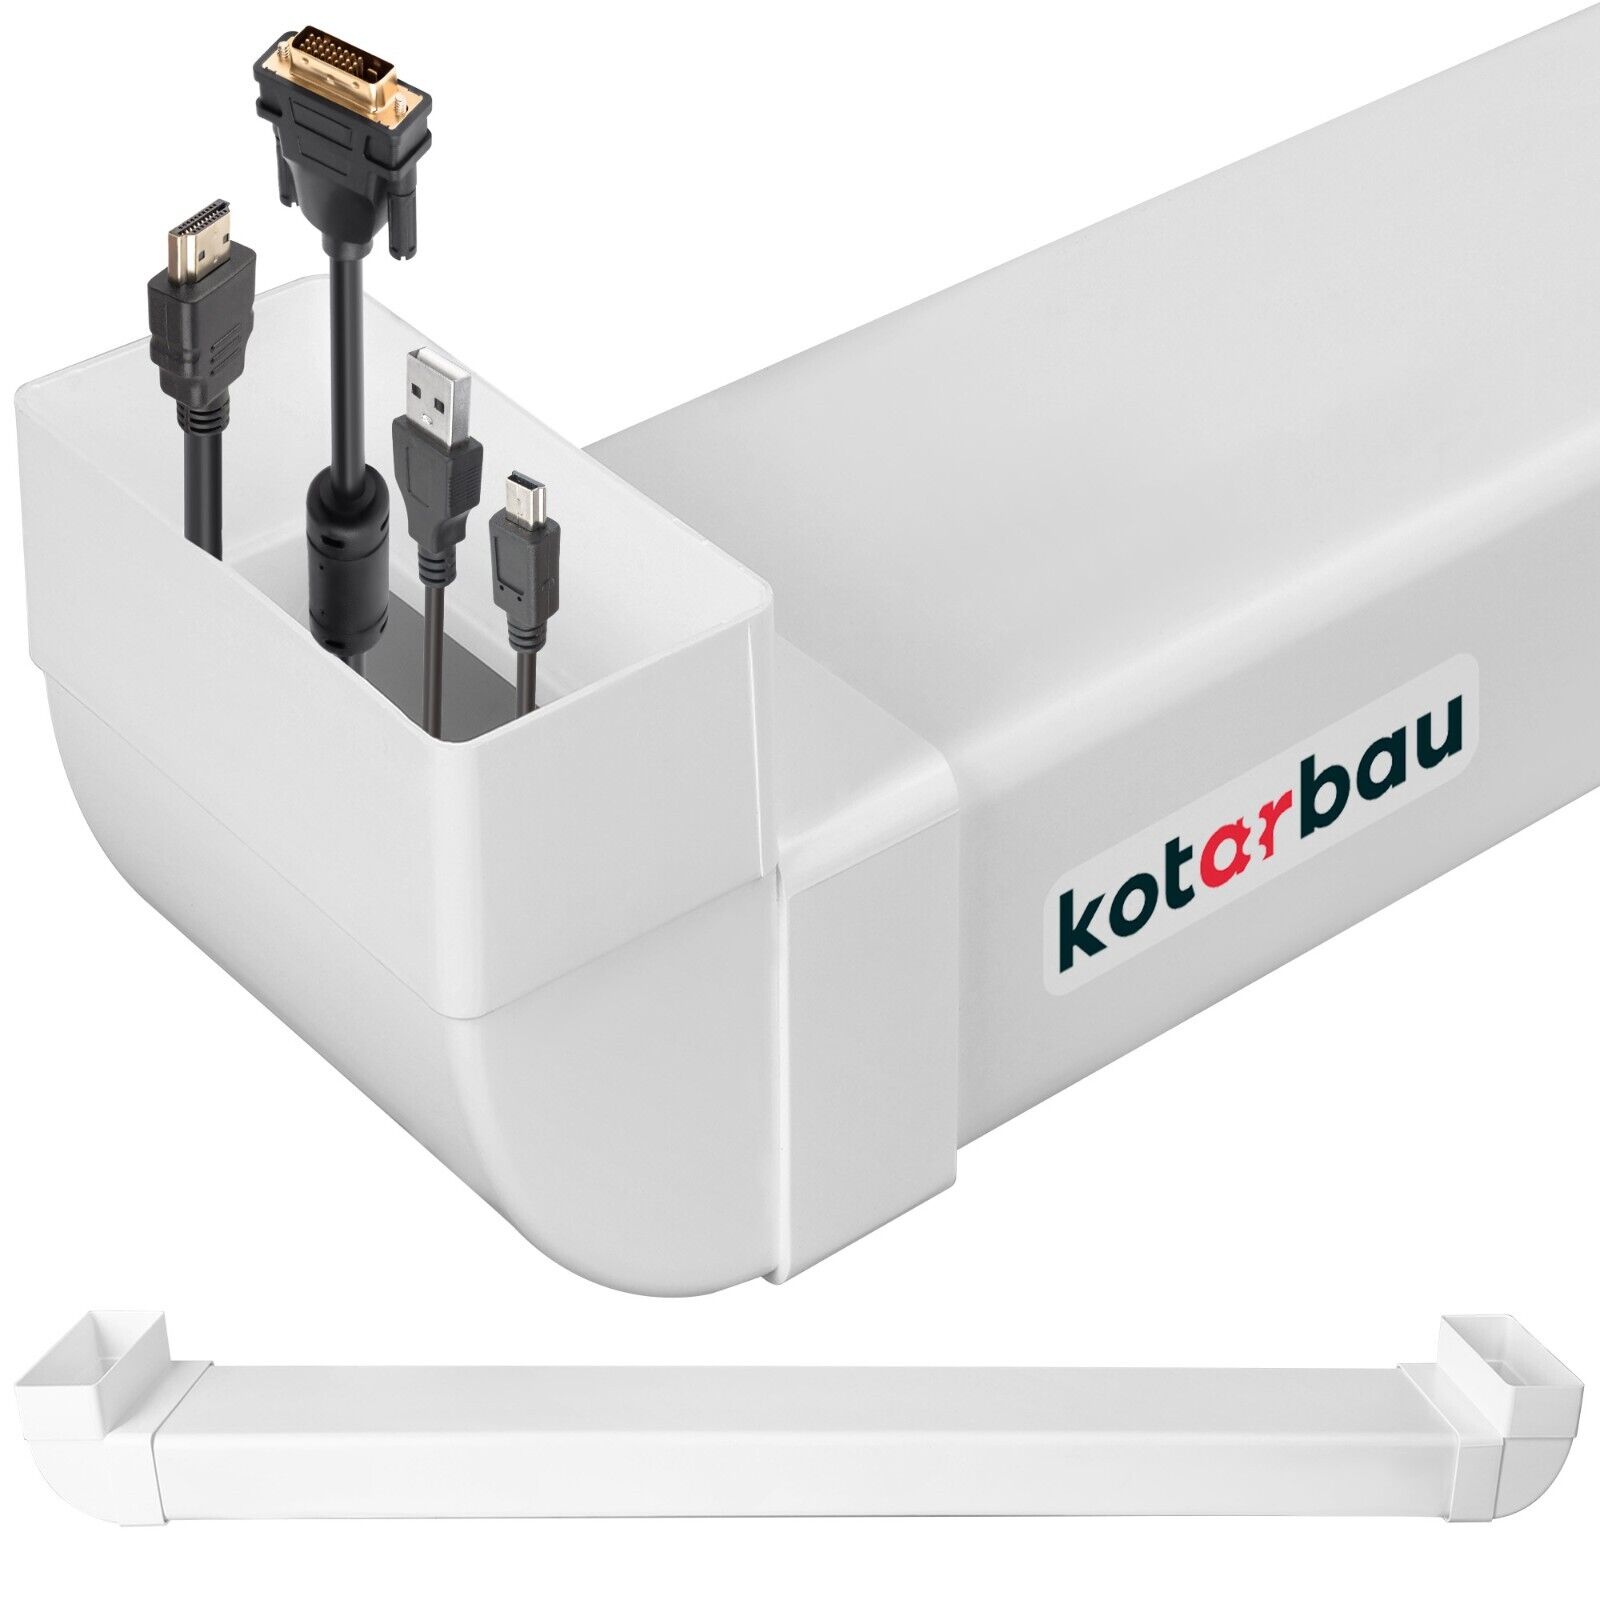 KOTARBAU Kabelkanal Unterputz für TV Kunststoff unsichtbare Kabeldurchführung